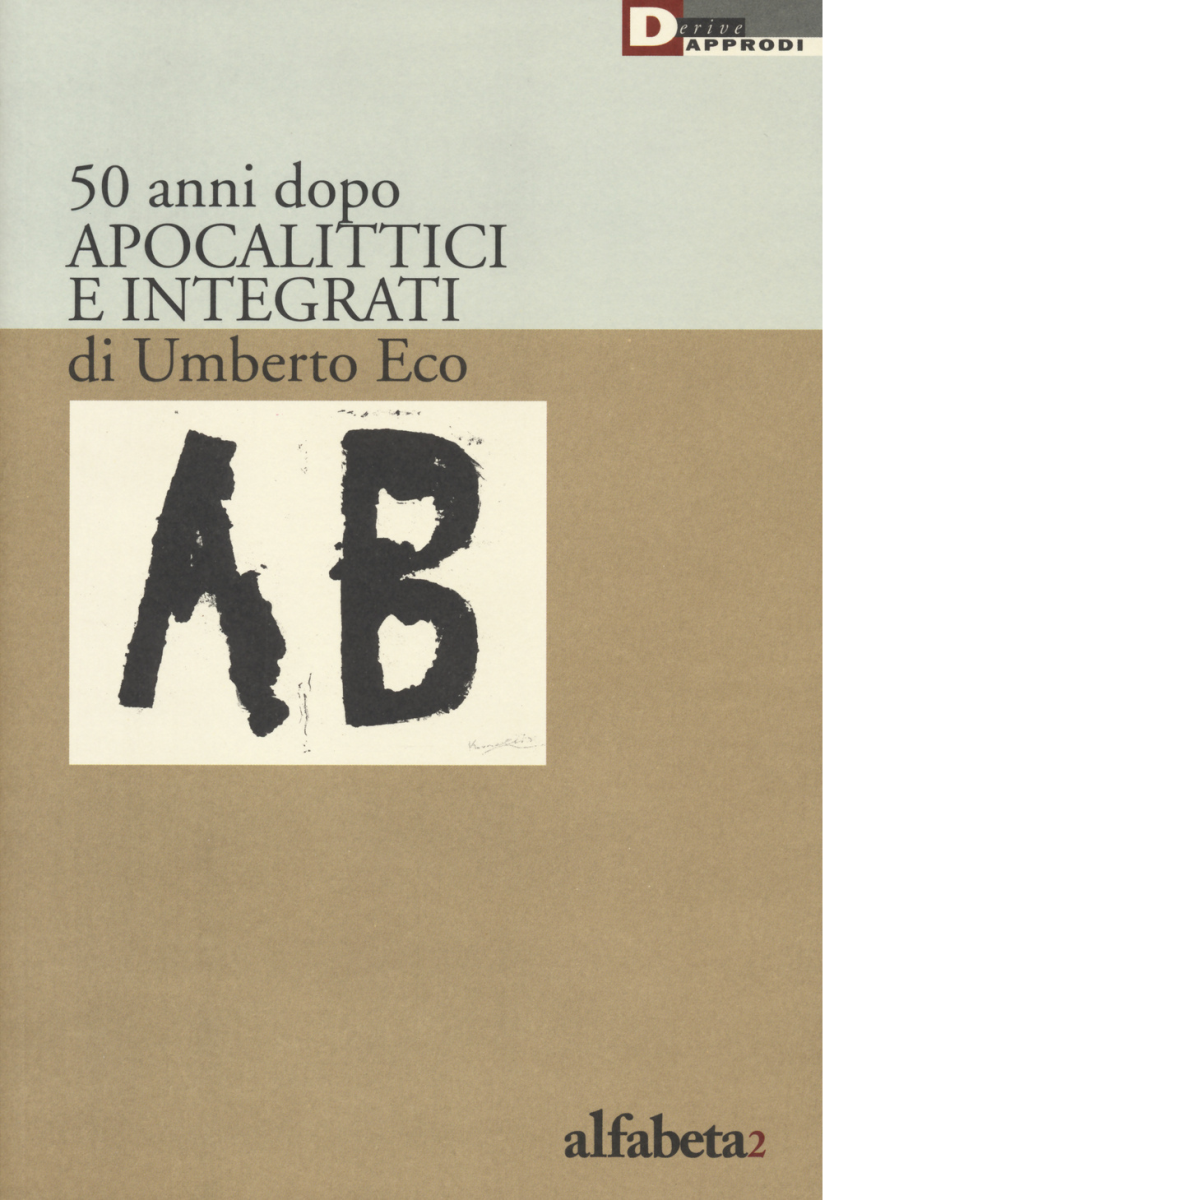 50 anni dopo apocalittici e integrati di Umberto Eco di A. M. Lorusso - 2016